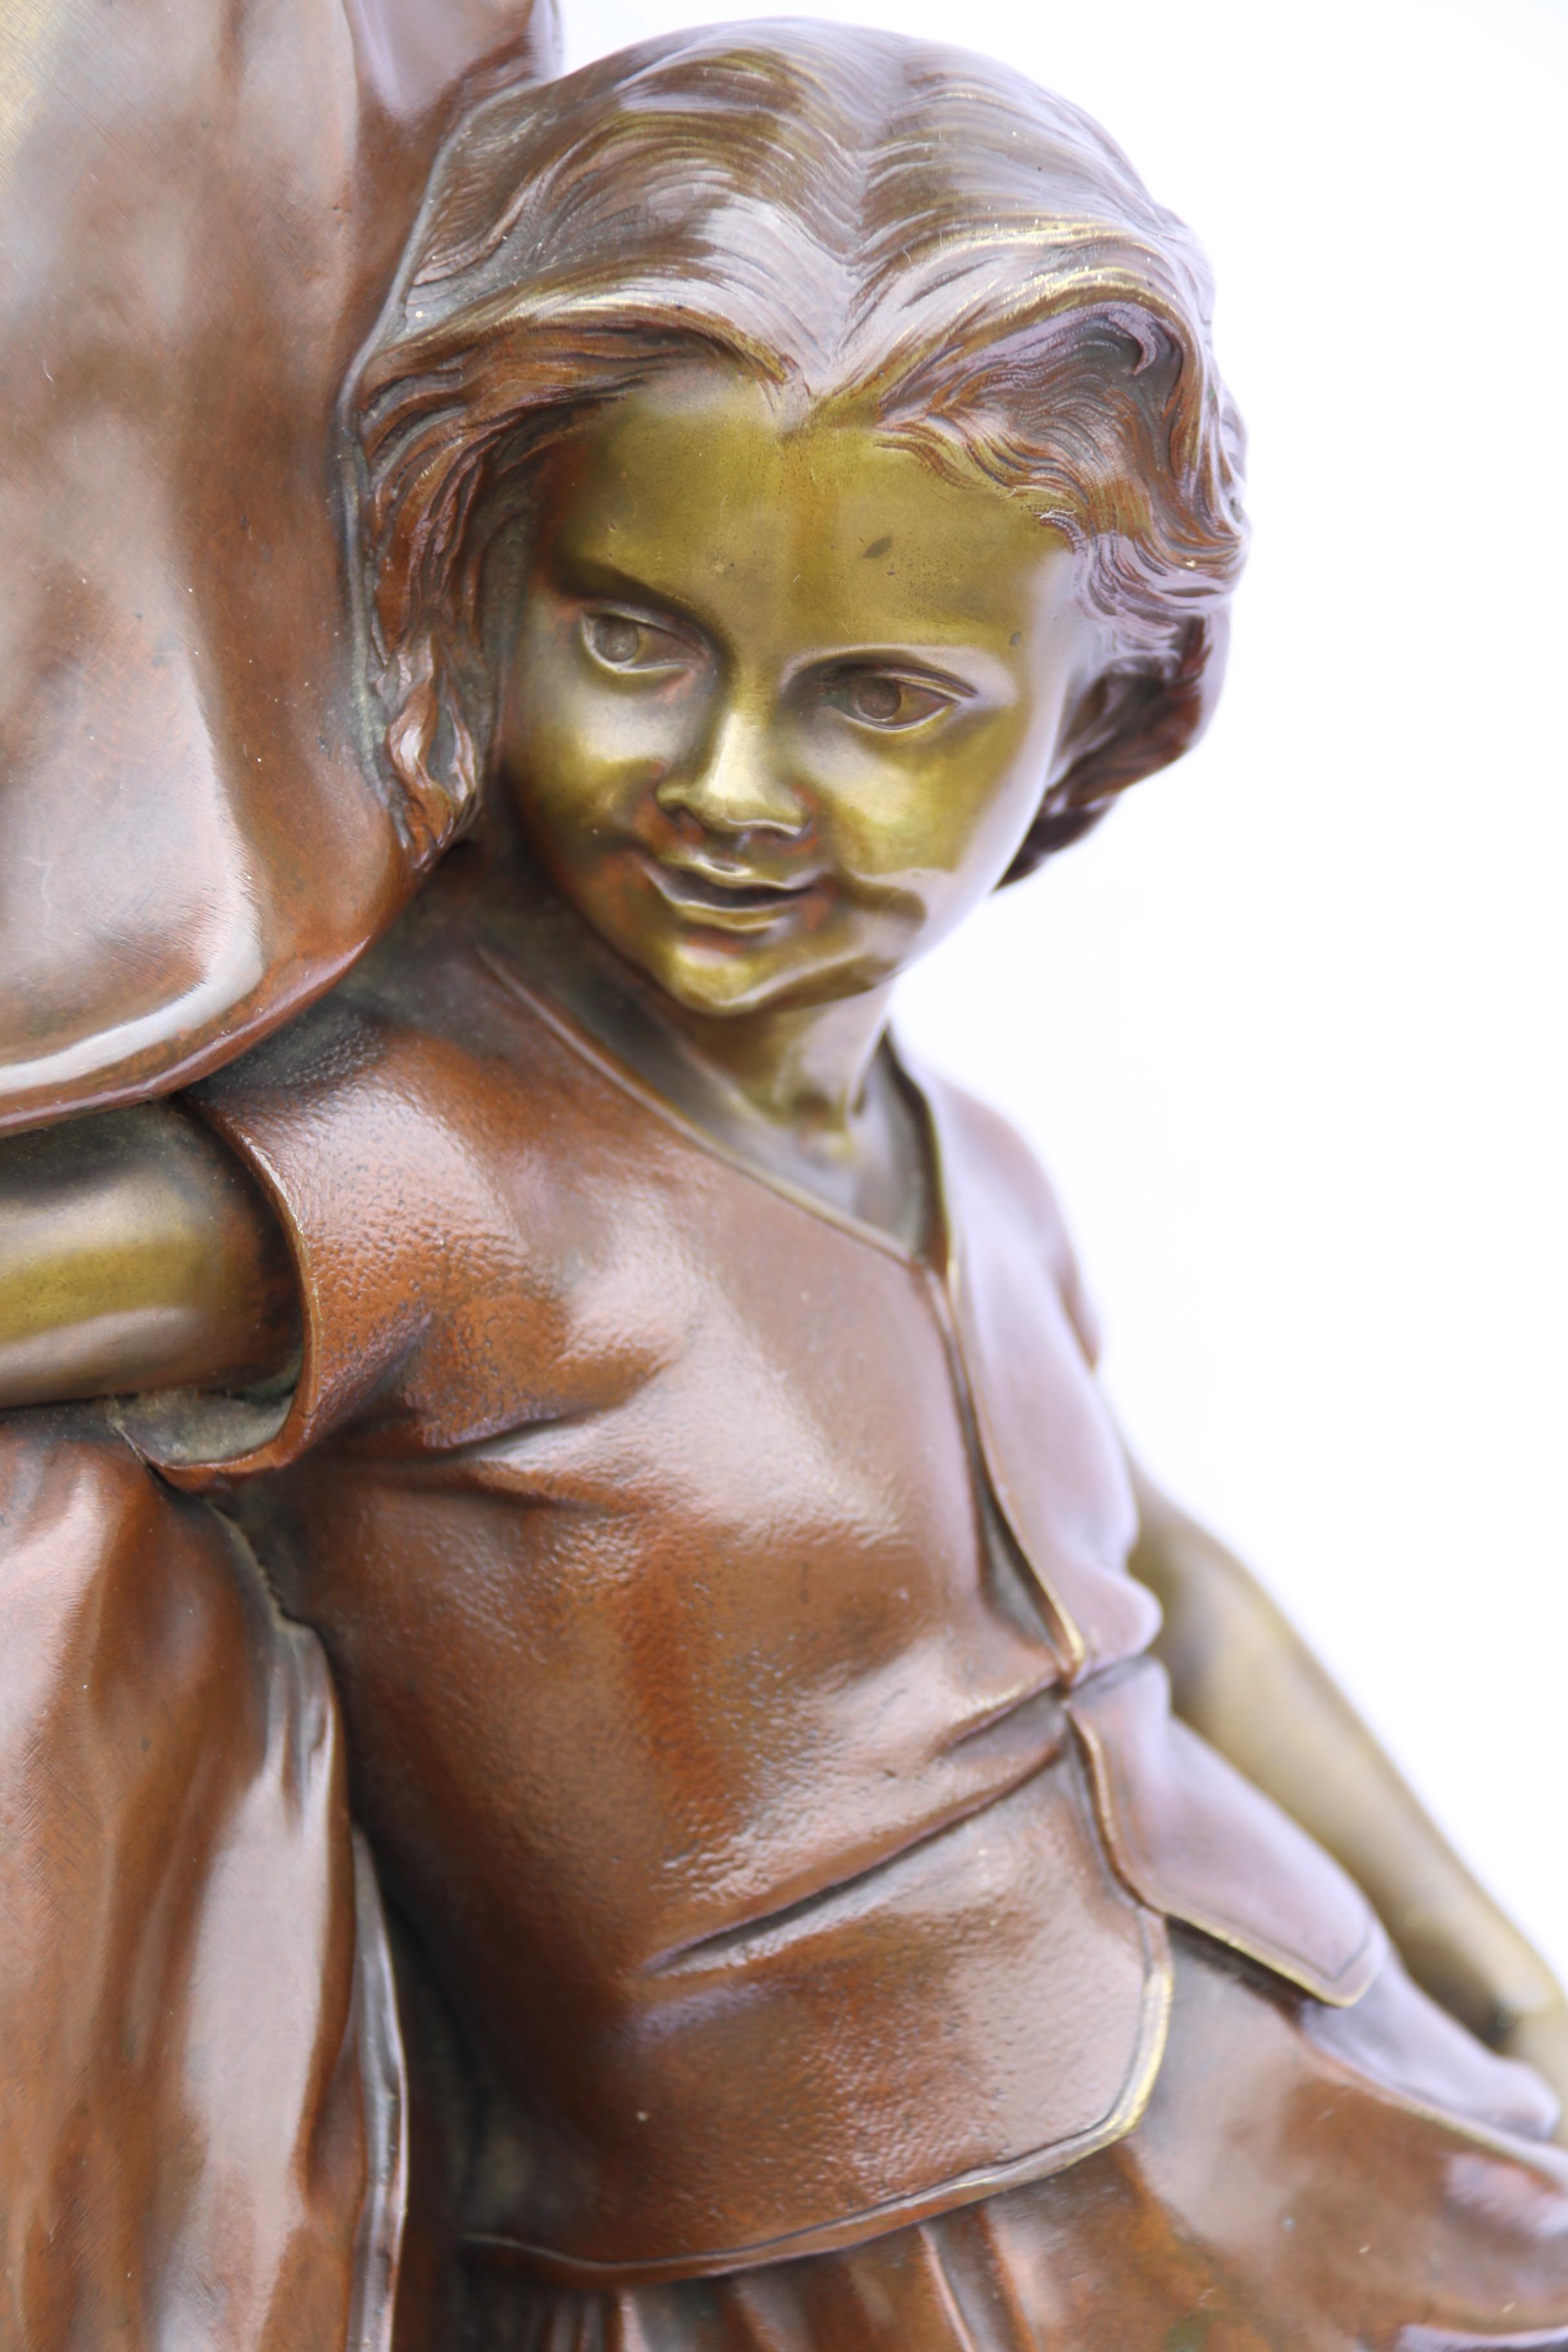 Une très grande et importante étude en bronze d'une mère et de sa fille par Lucien Madrassi (1849 -1919)

Cette grande étude en bronze de grande qualité est une œuvre du célèbre artiste et sculpteur italien Lucien Madrassi (1849 - 1919). Né en